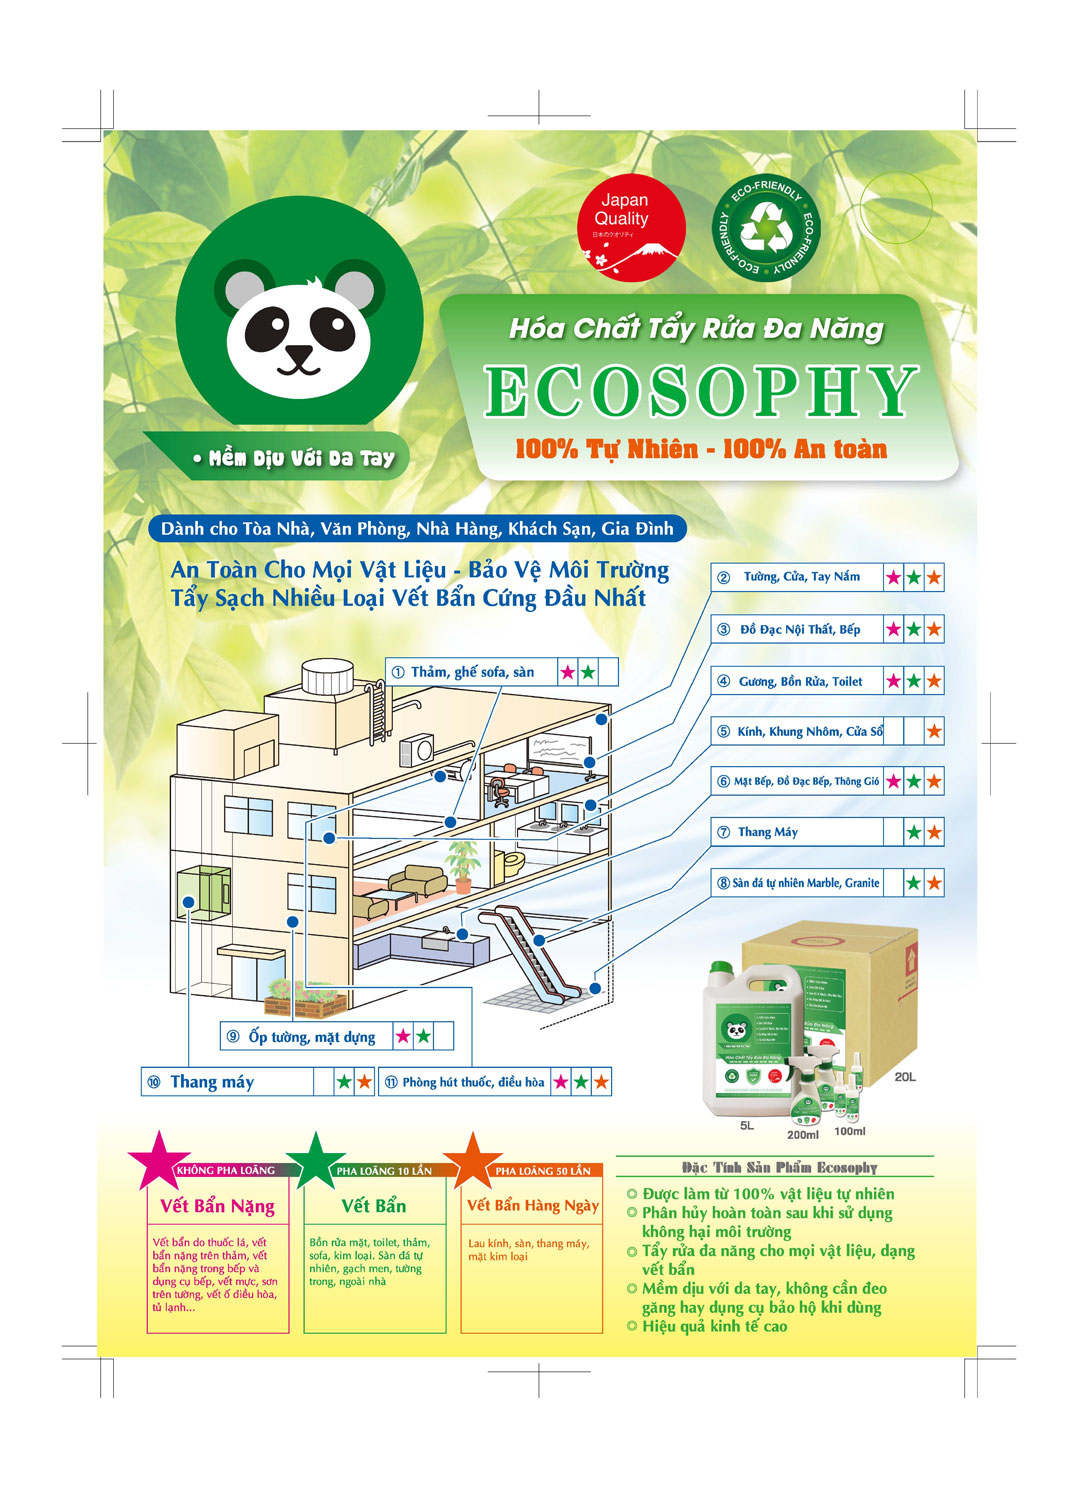 Hóa chất tẩy rửa đa năng Ecosophy số 1 tại Nhật Bản